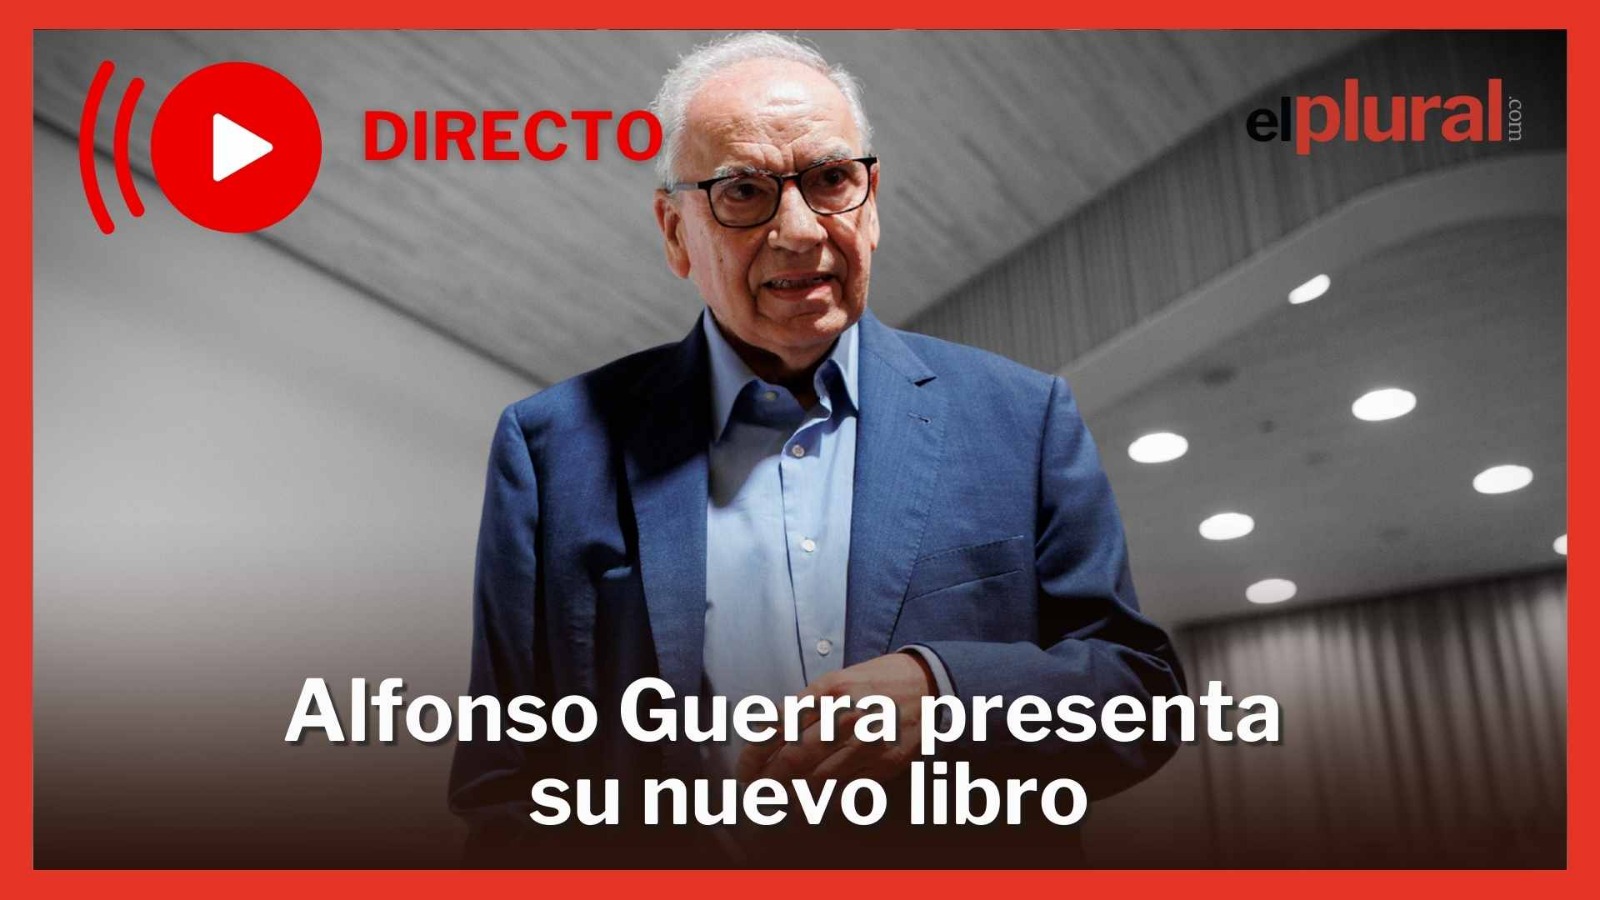 Alfonso Guerra presenta su nuevo libro. ElPlural.com